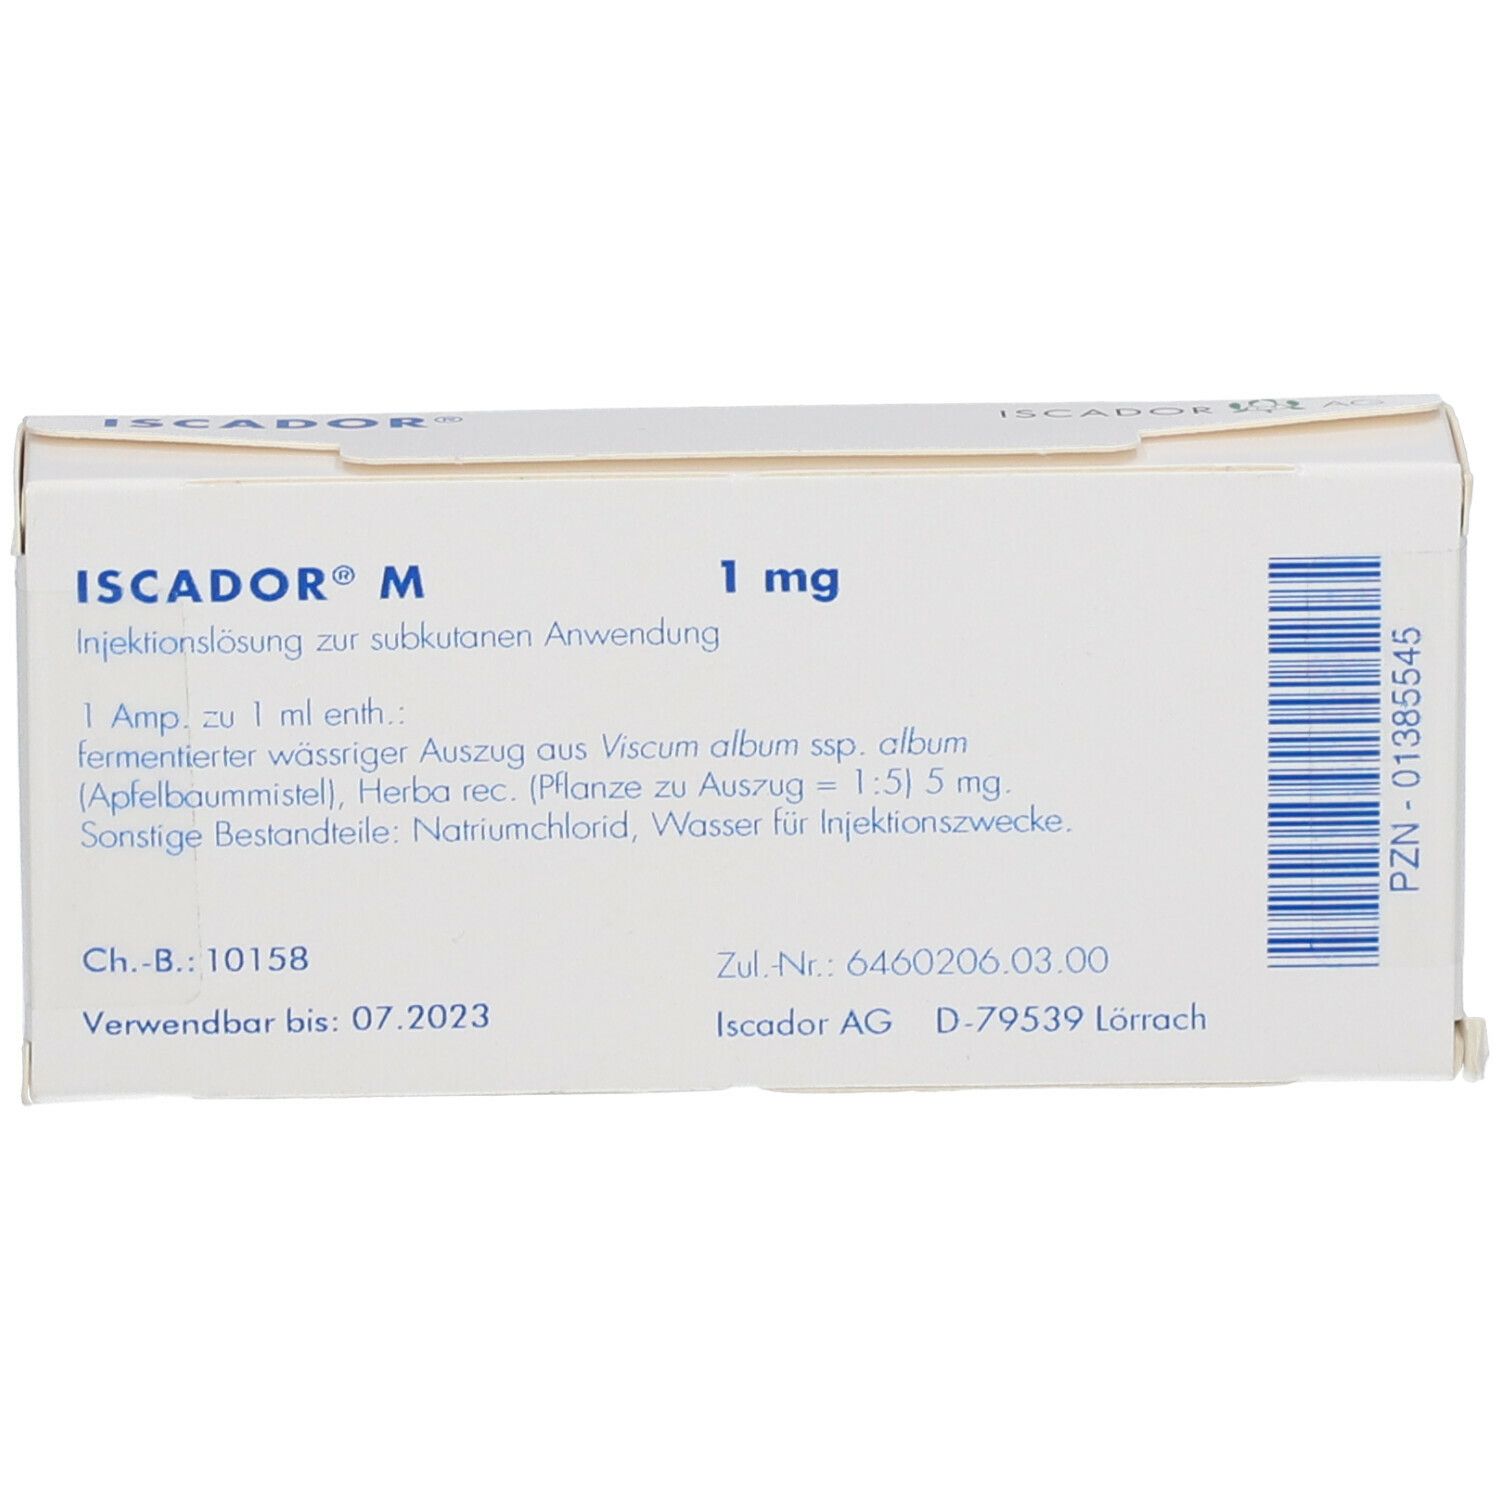 ISCADOR® M 1 mg